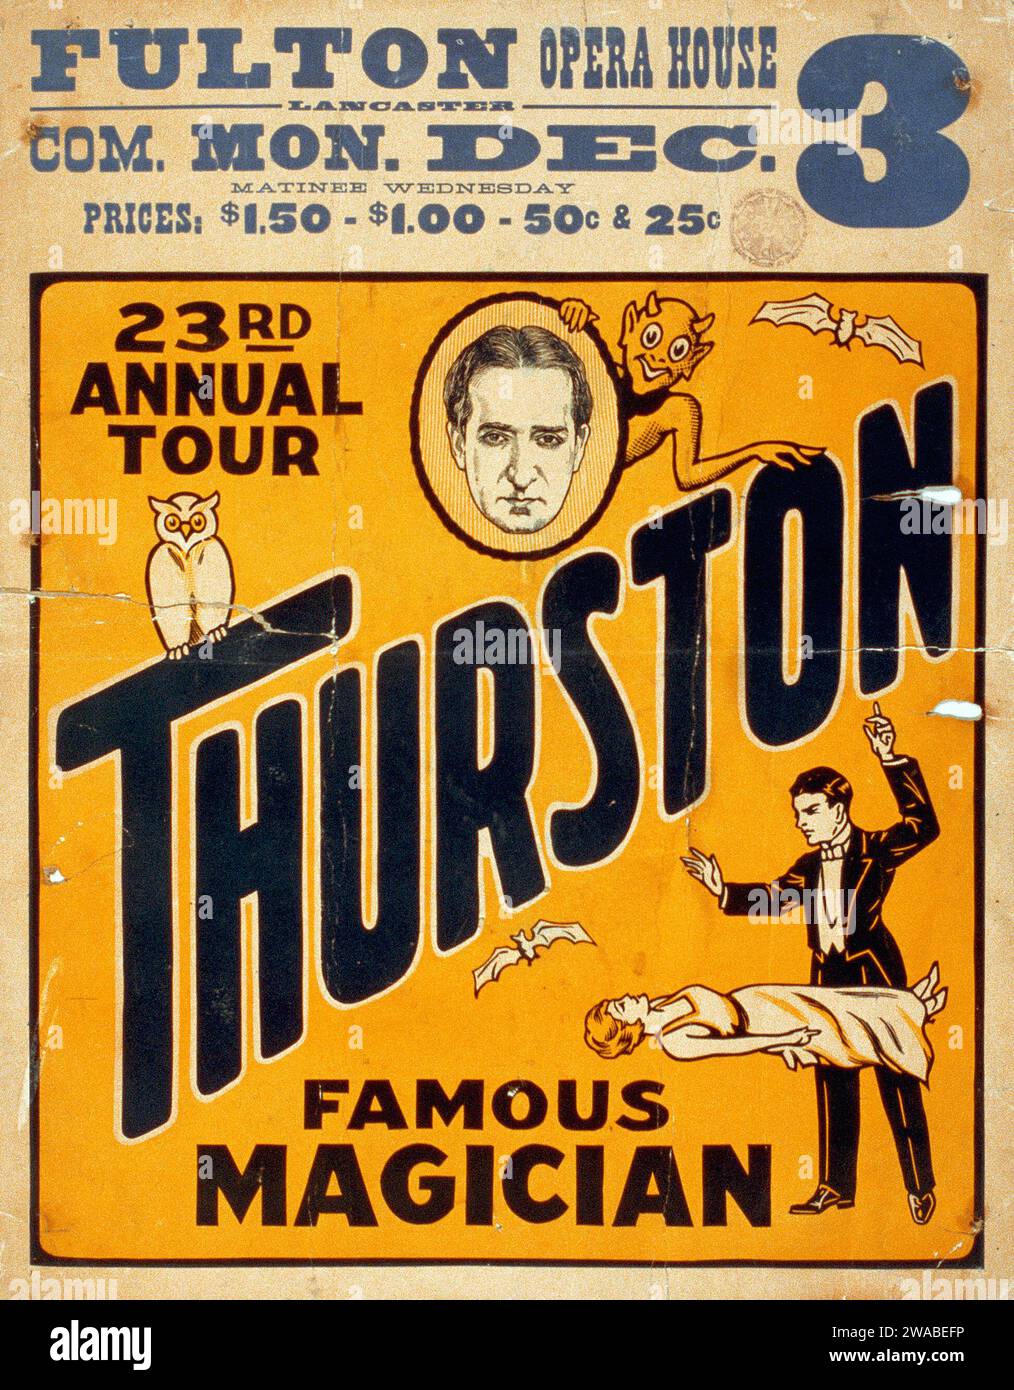 Affiche magique - Thurston, célèbre magicien 23e tournée annuelle - Fulton Opera House, c 1934 Banque D'Images